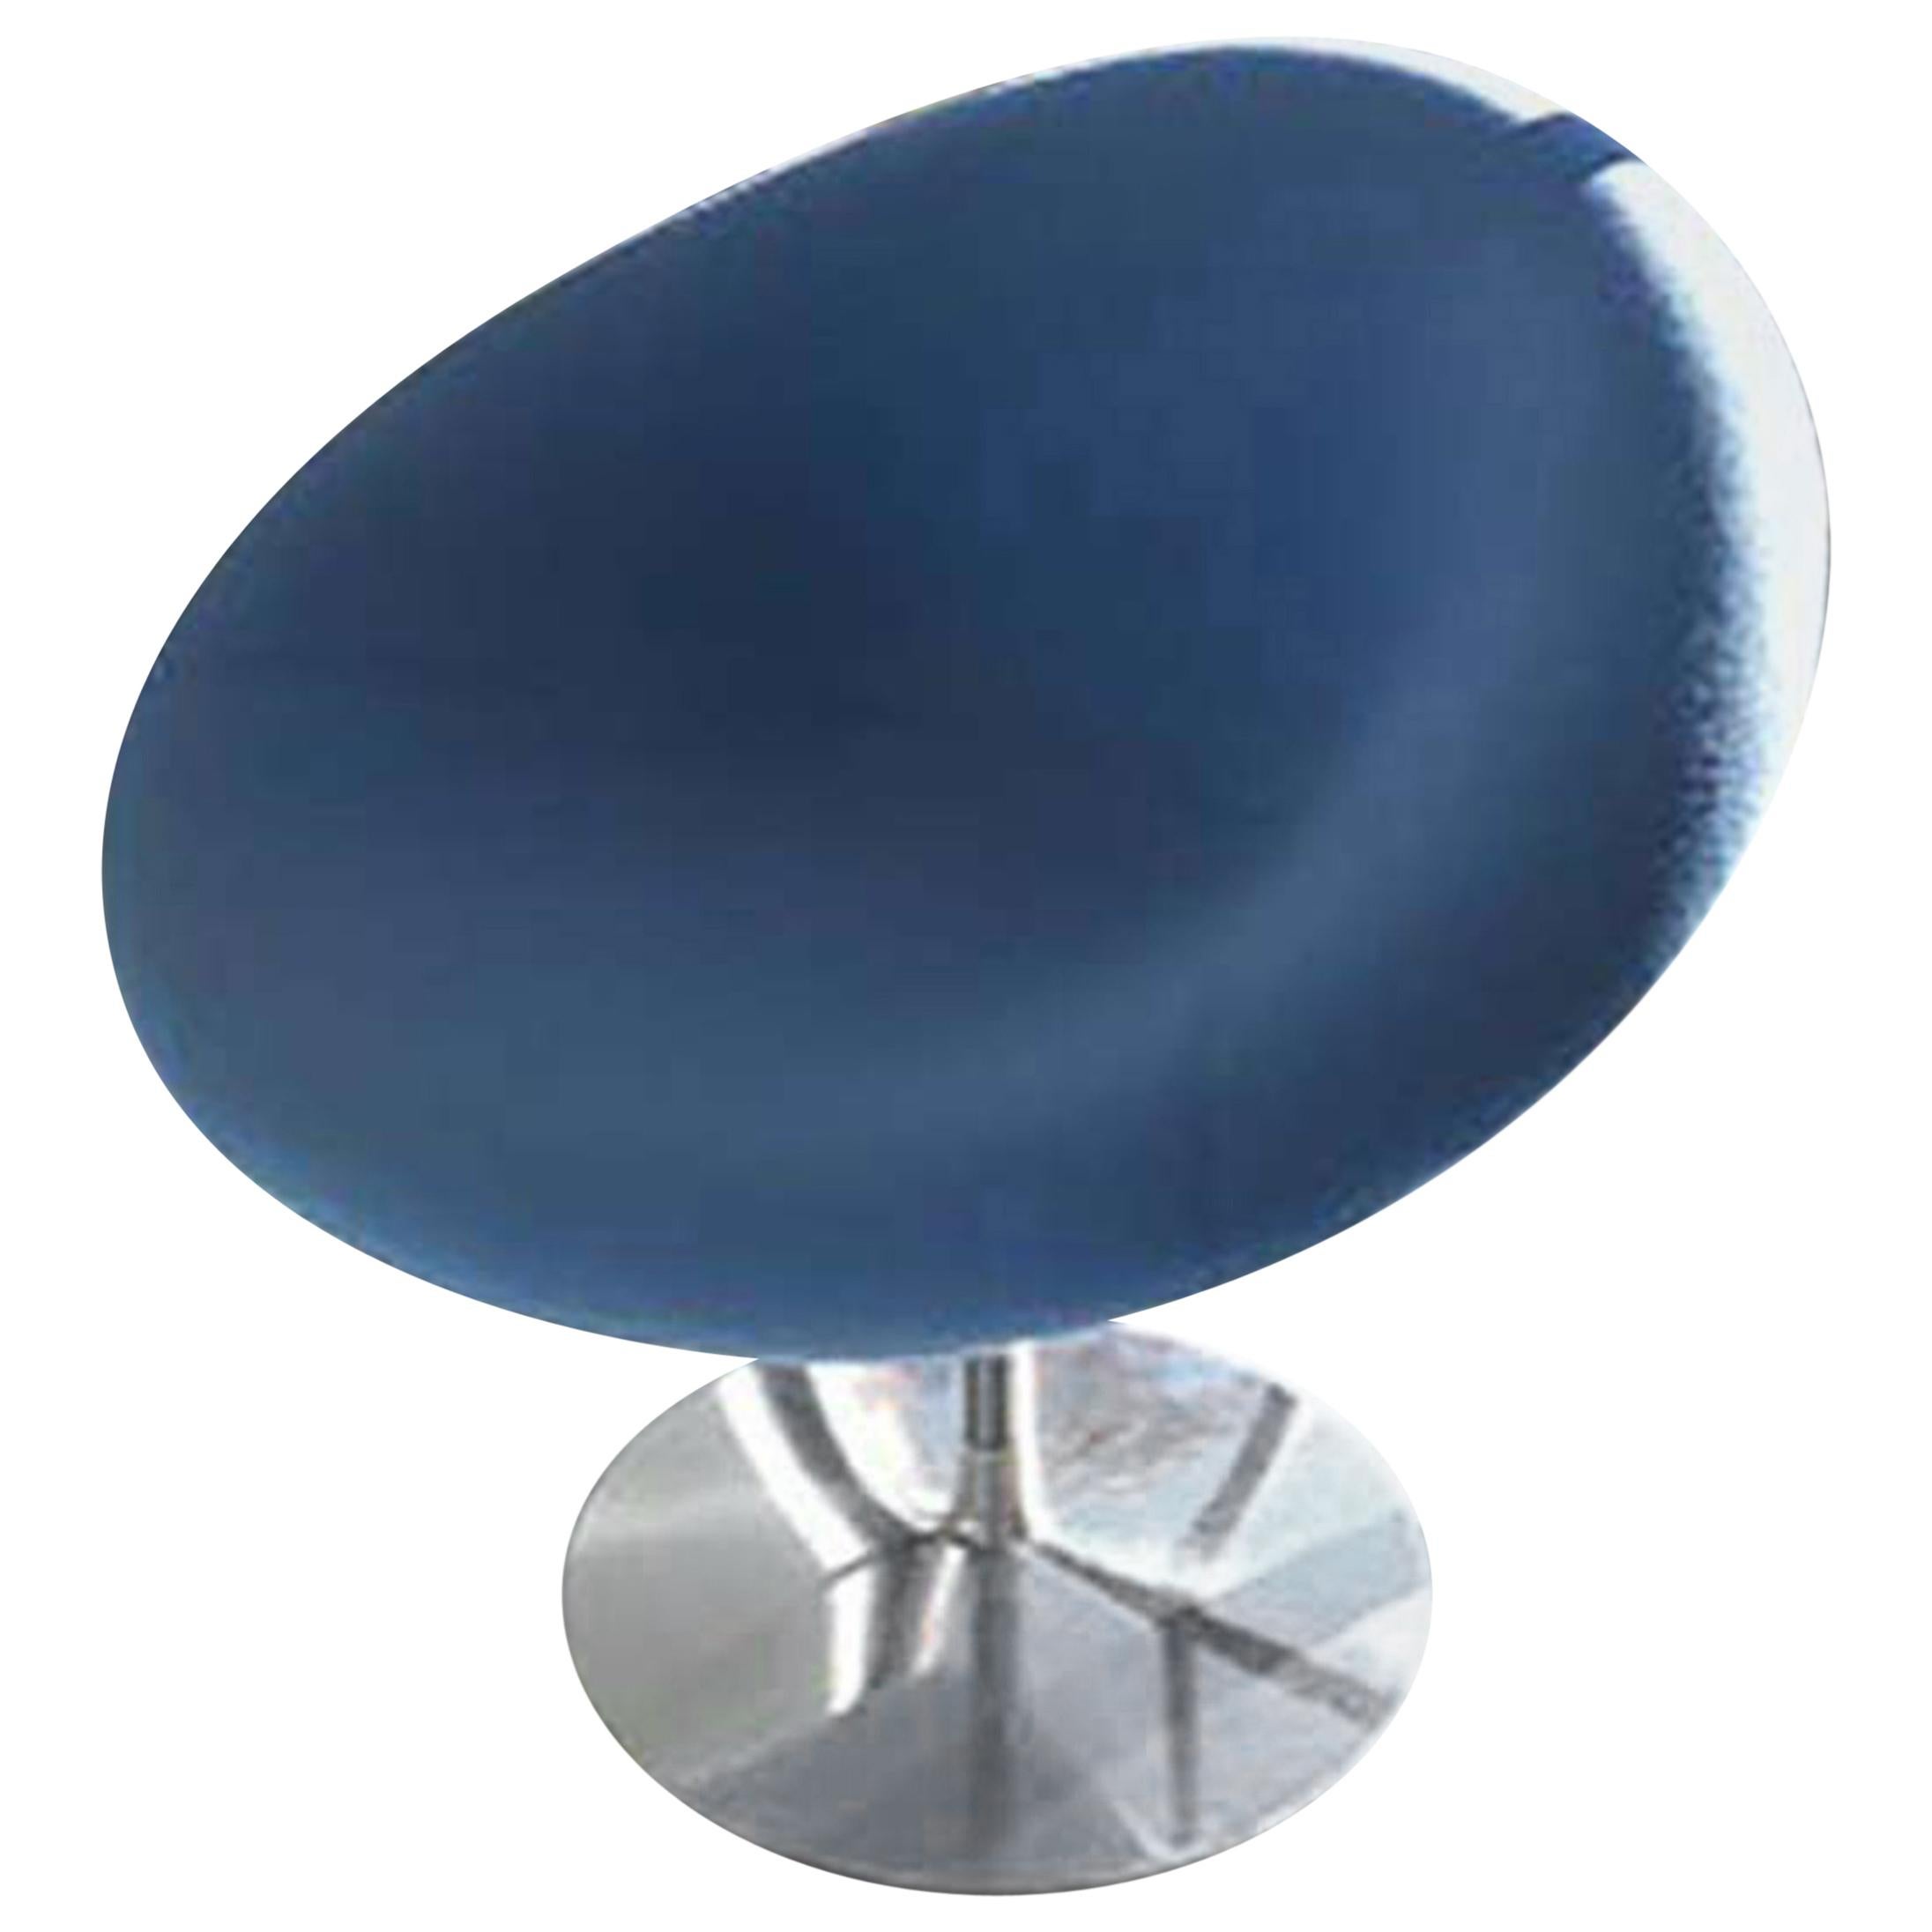 Pierre Paulin Swivel Blue Little Globe Stool